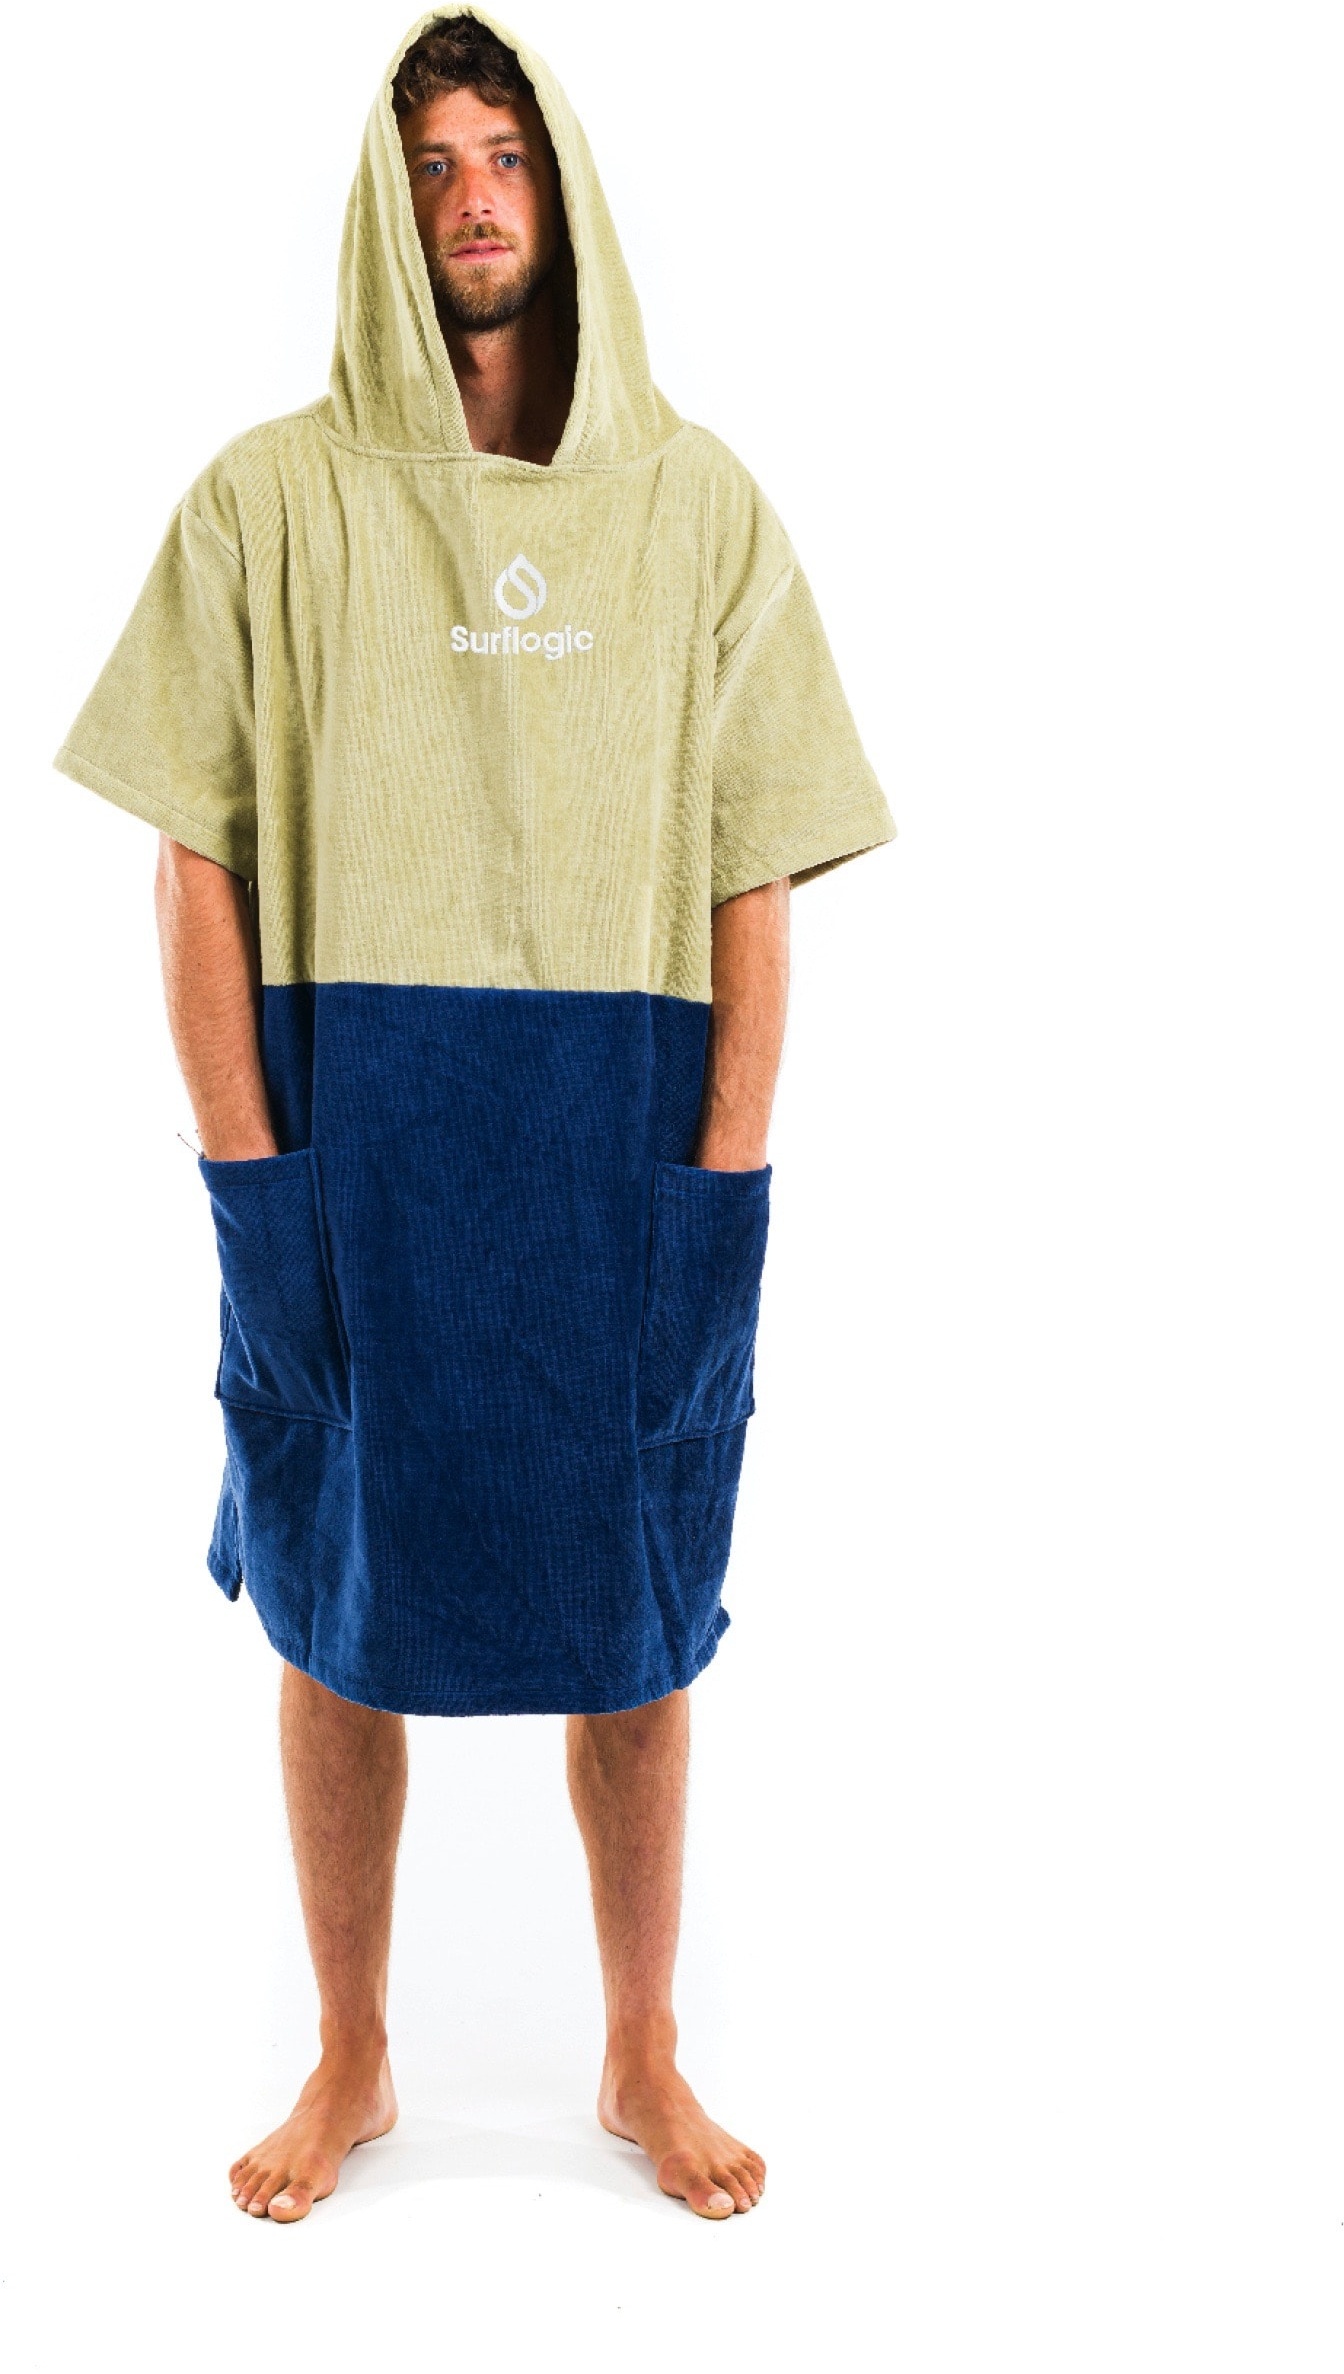 Surflogic Poncho warm handtuch surf wasser Stand umziehen weich, Farbe: Tile&Navy